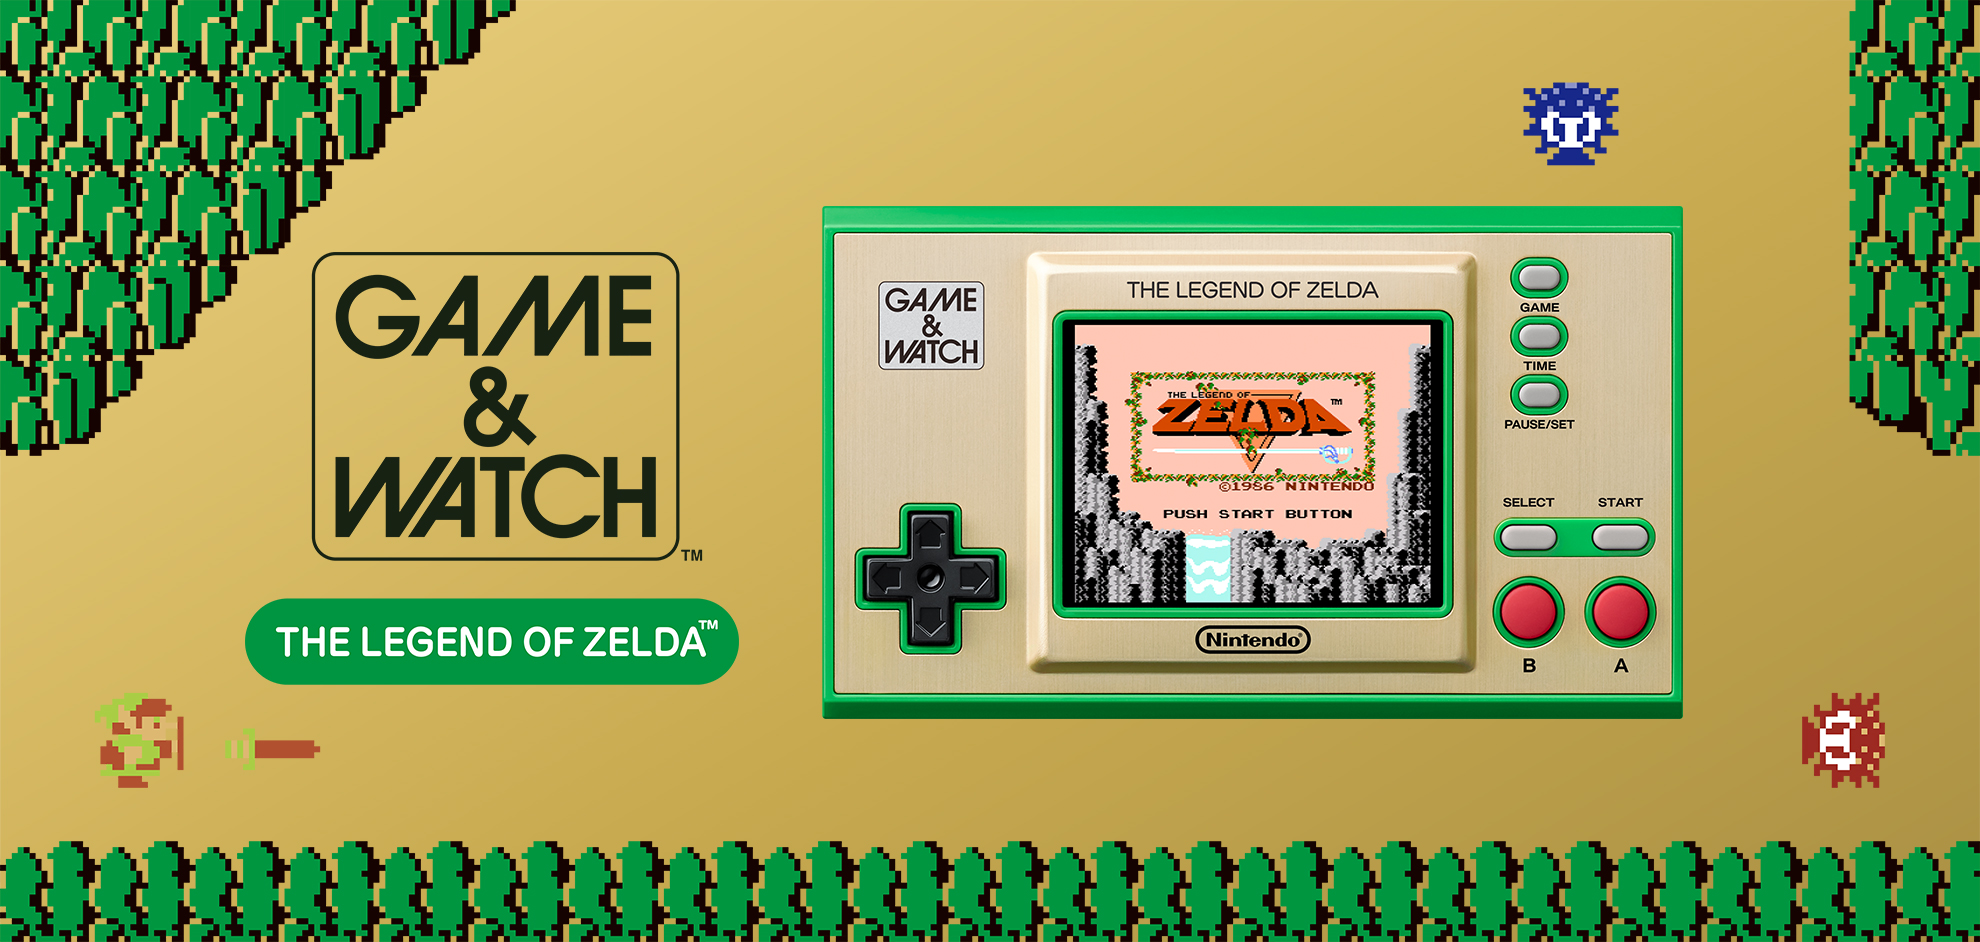  Nintendo Game & Watch: The Legend of Zelda : Video Games